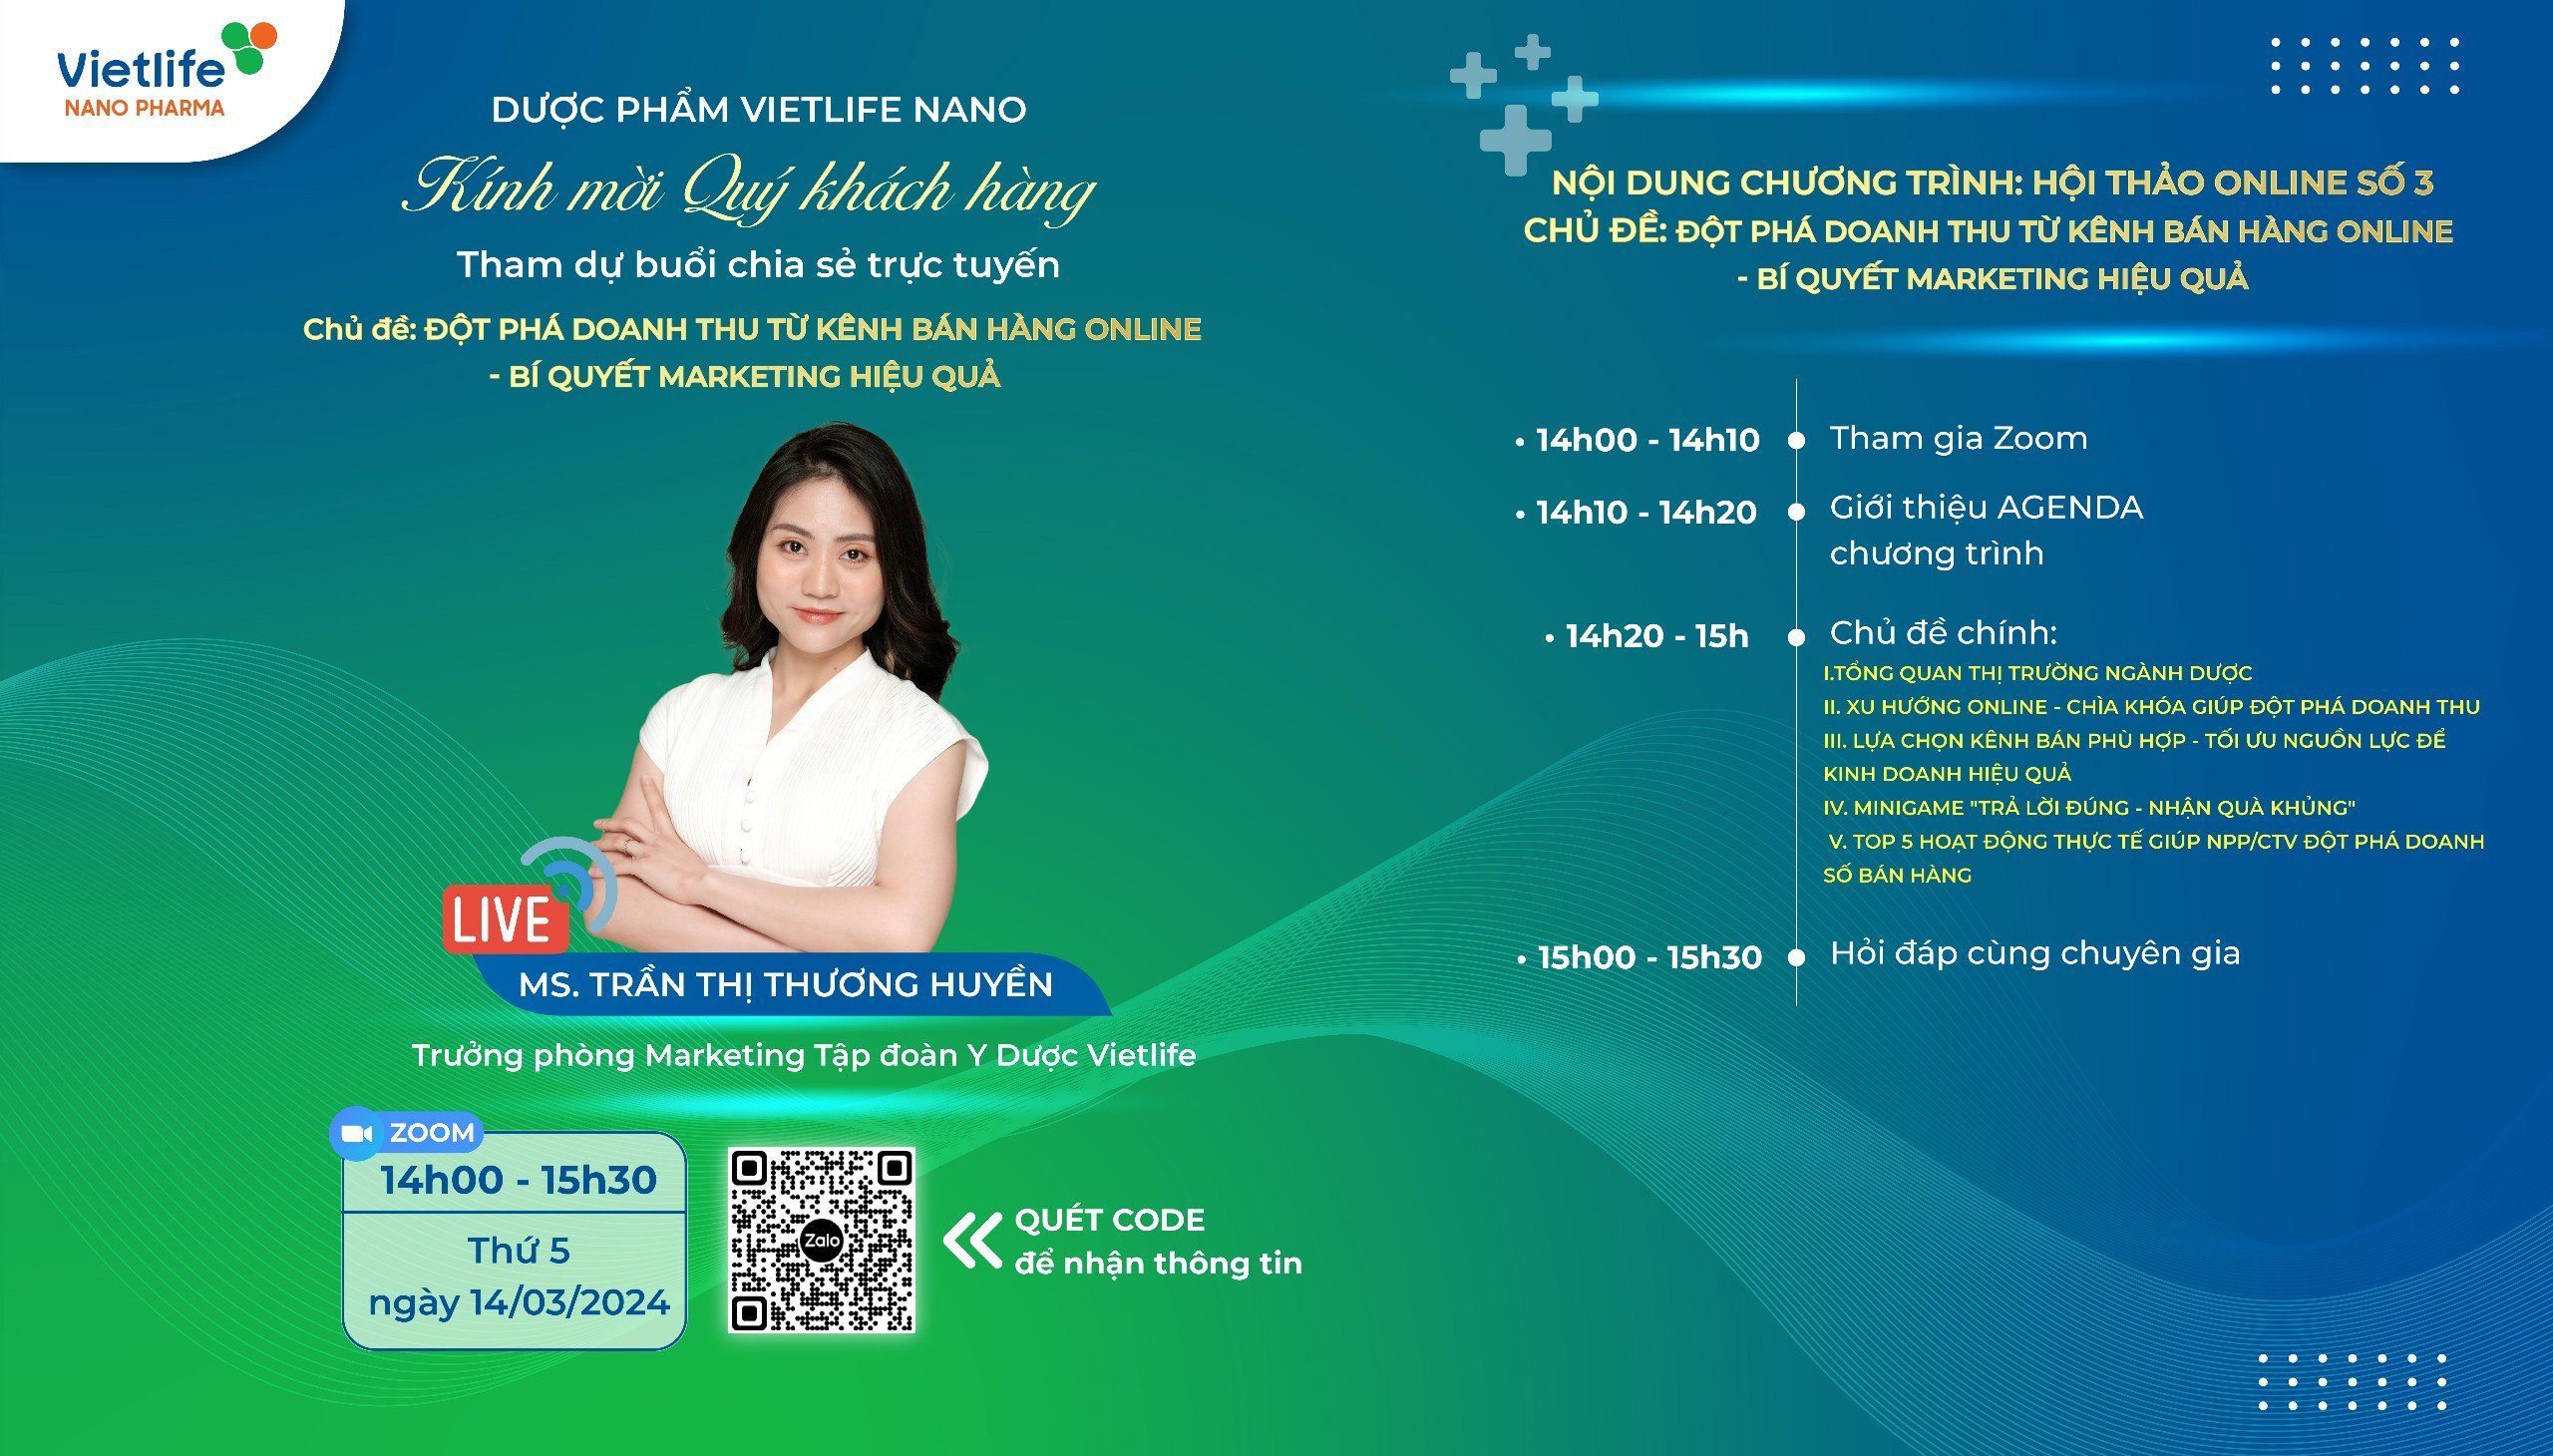 Vietlife Nano Pharma tổ chức hội thảo online chủ đề “Đột phá doanh thu từ kênh bán hàng online – Bí quyết marketing hiệu quả” 1